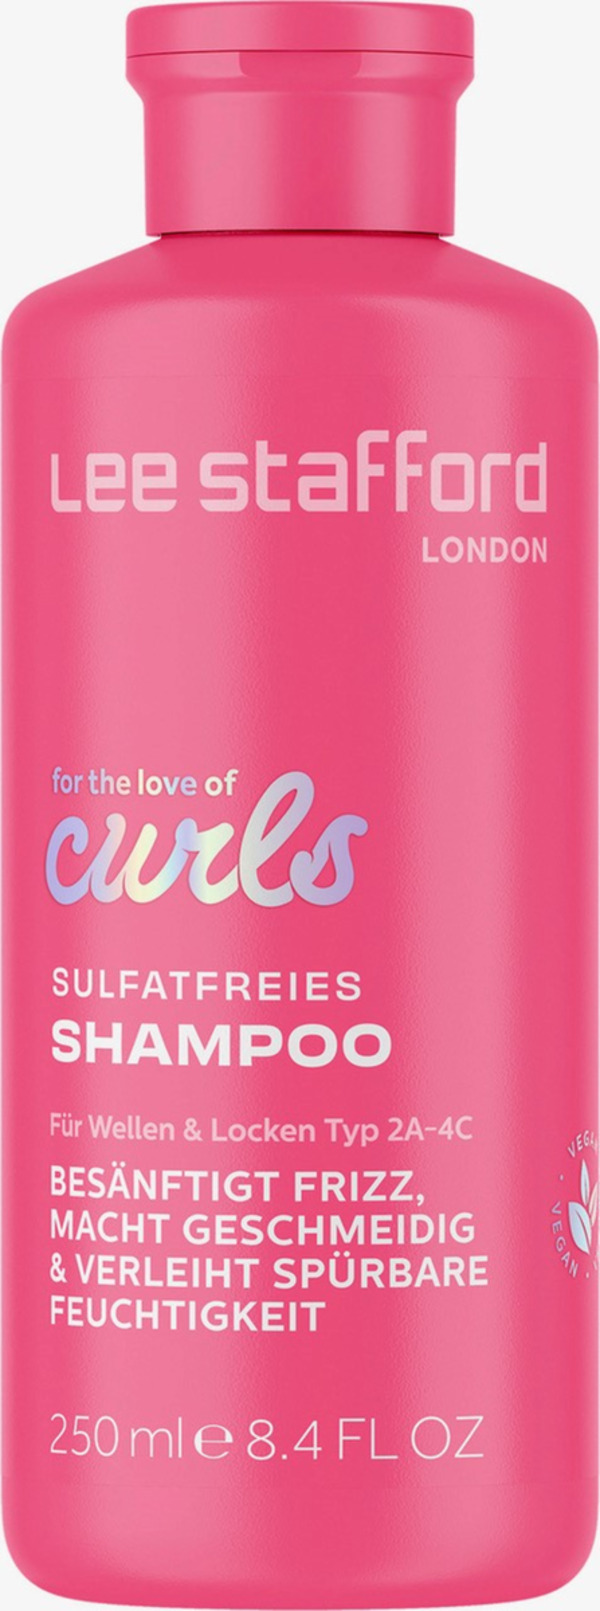 Bild 1 von Lee Stafford for the love of curls Sulfatfreies Shampoo für Wellen & Locken